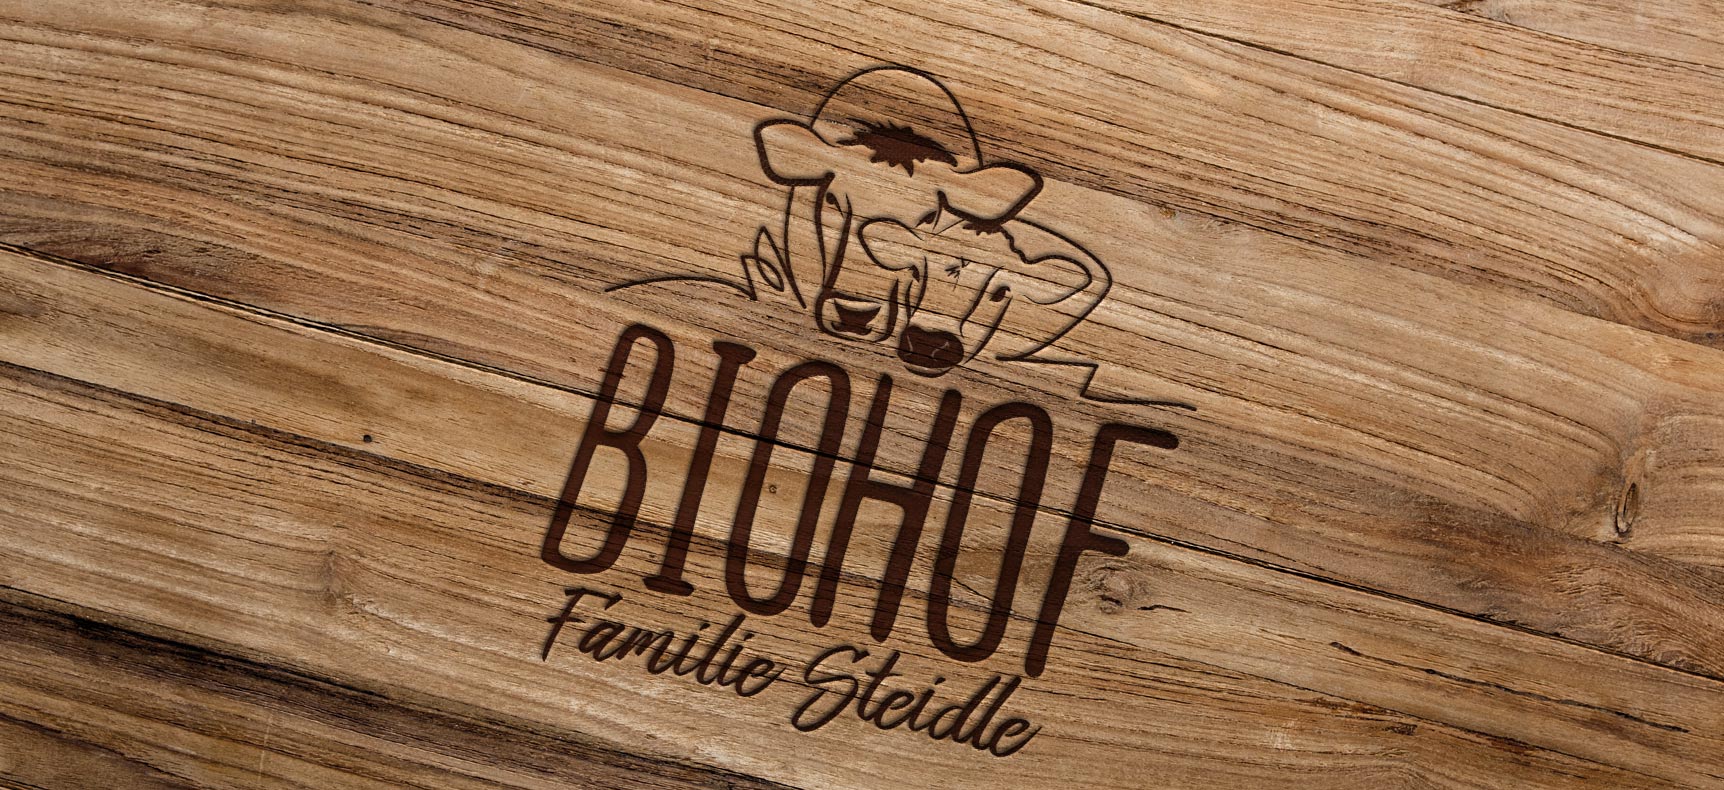 Biohof Steidle | Logo erstellt von StatusZwo.com